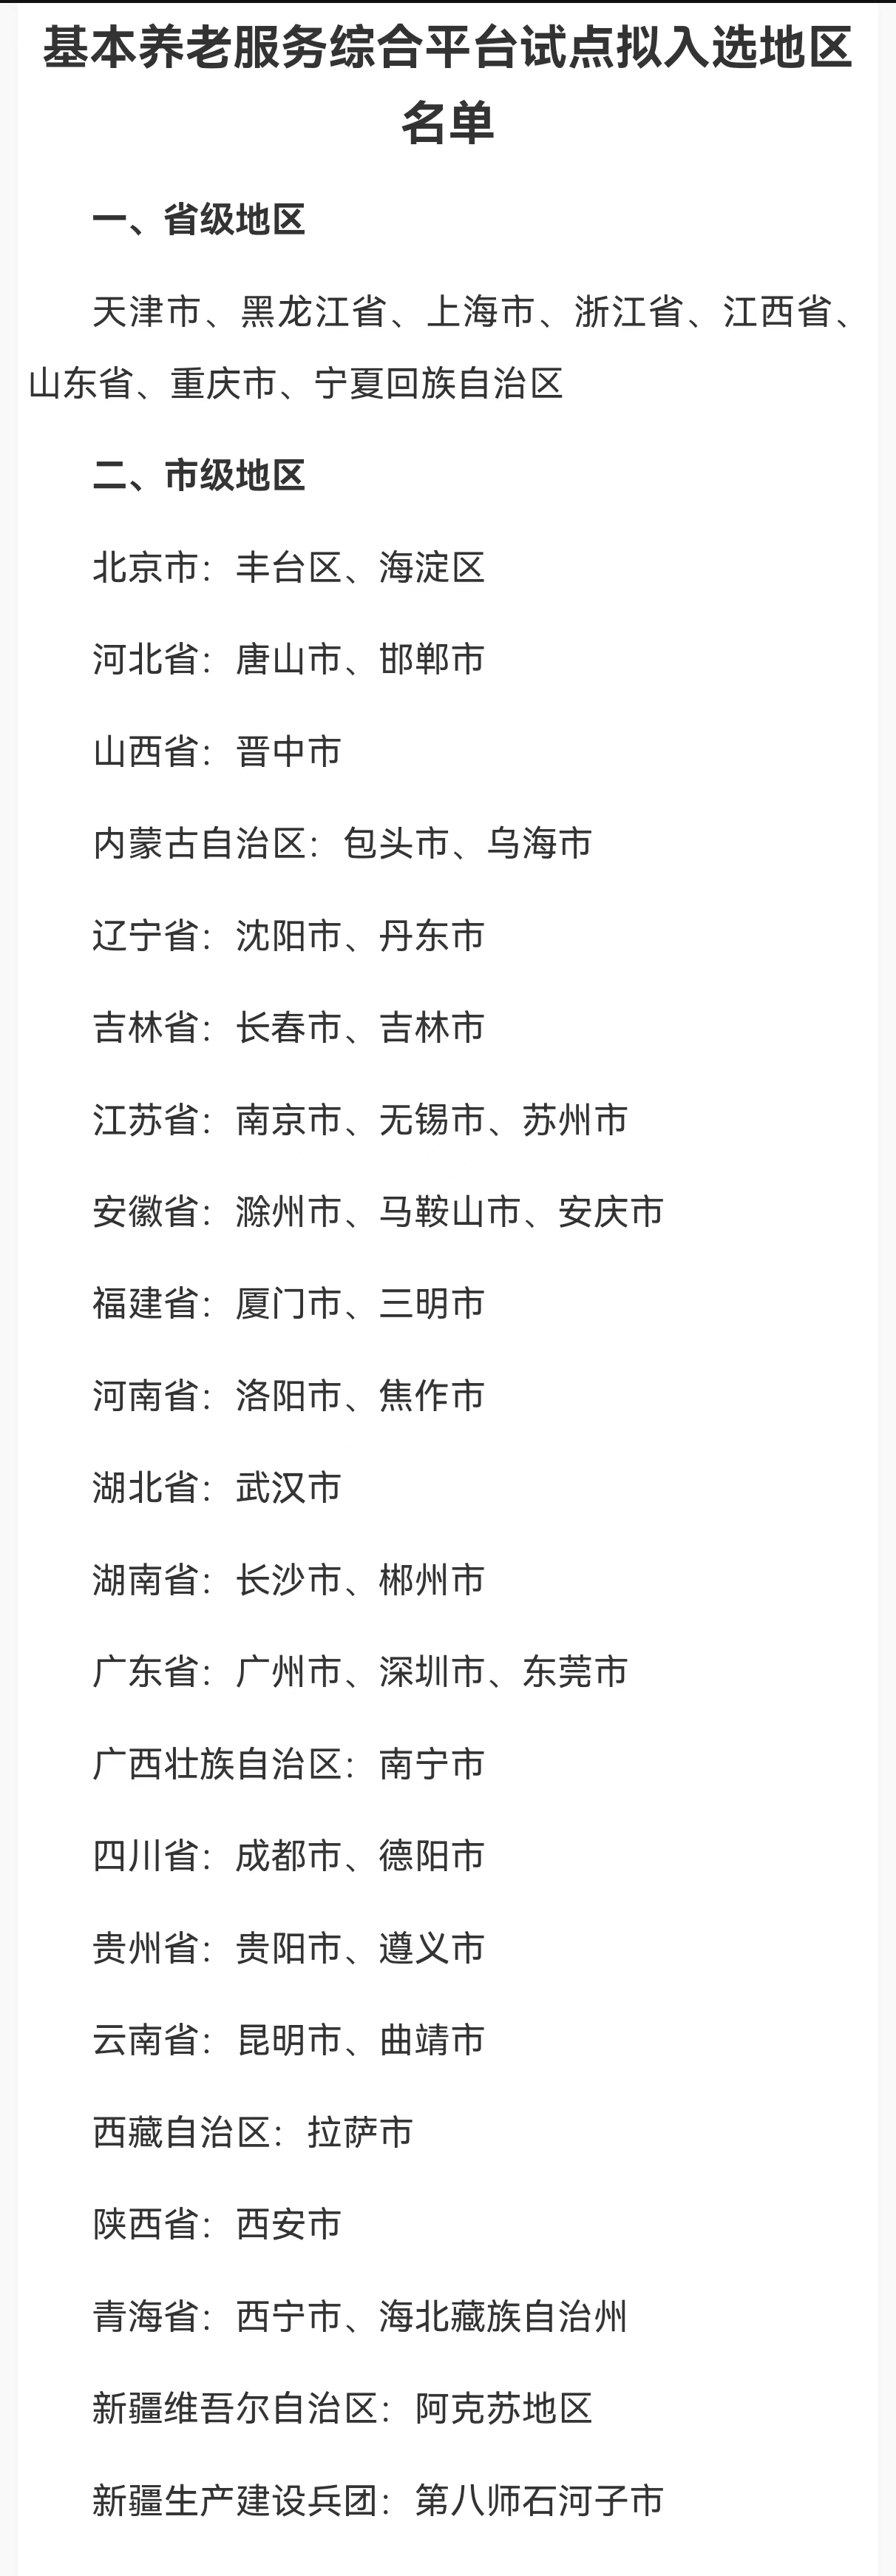 48个基本养老服务综合平台拟试点地区公示 广州深圳东莞入选